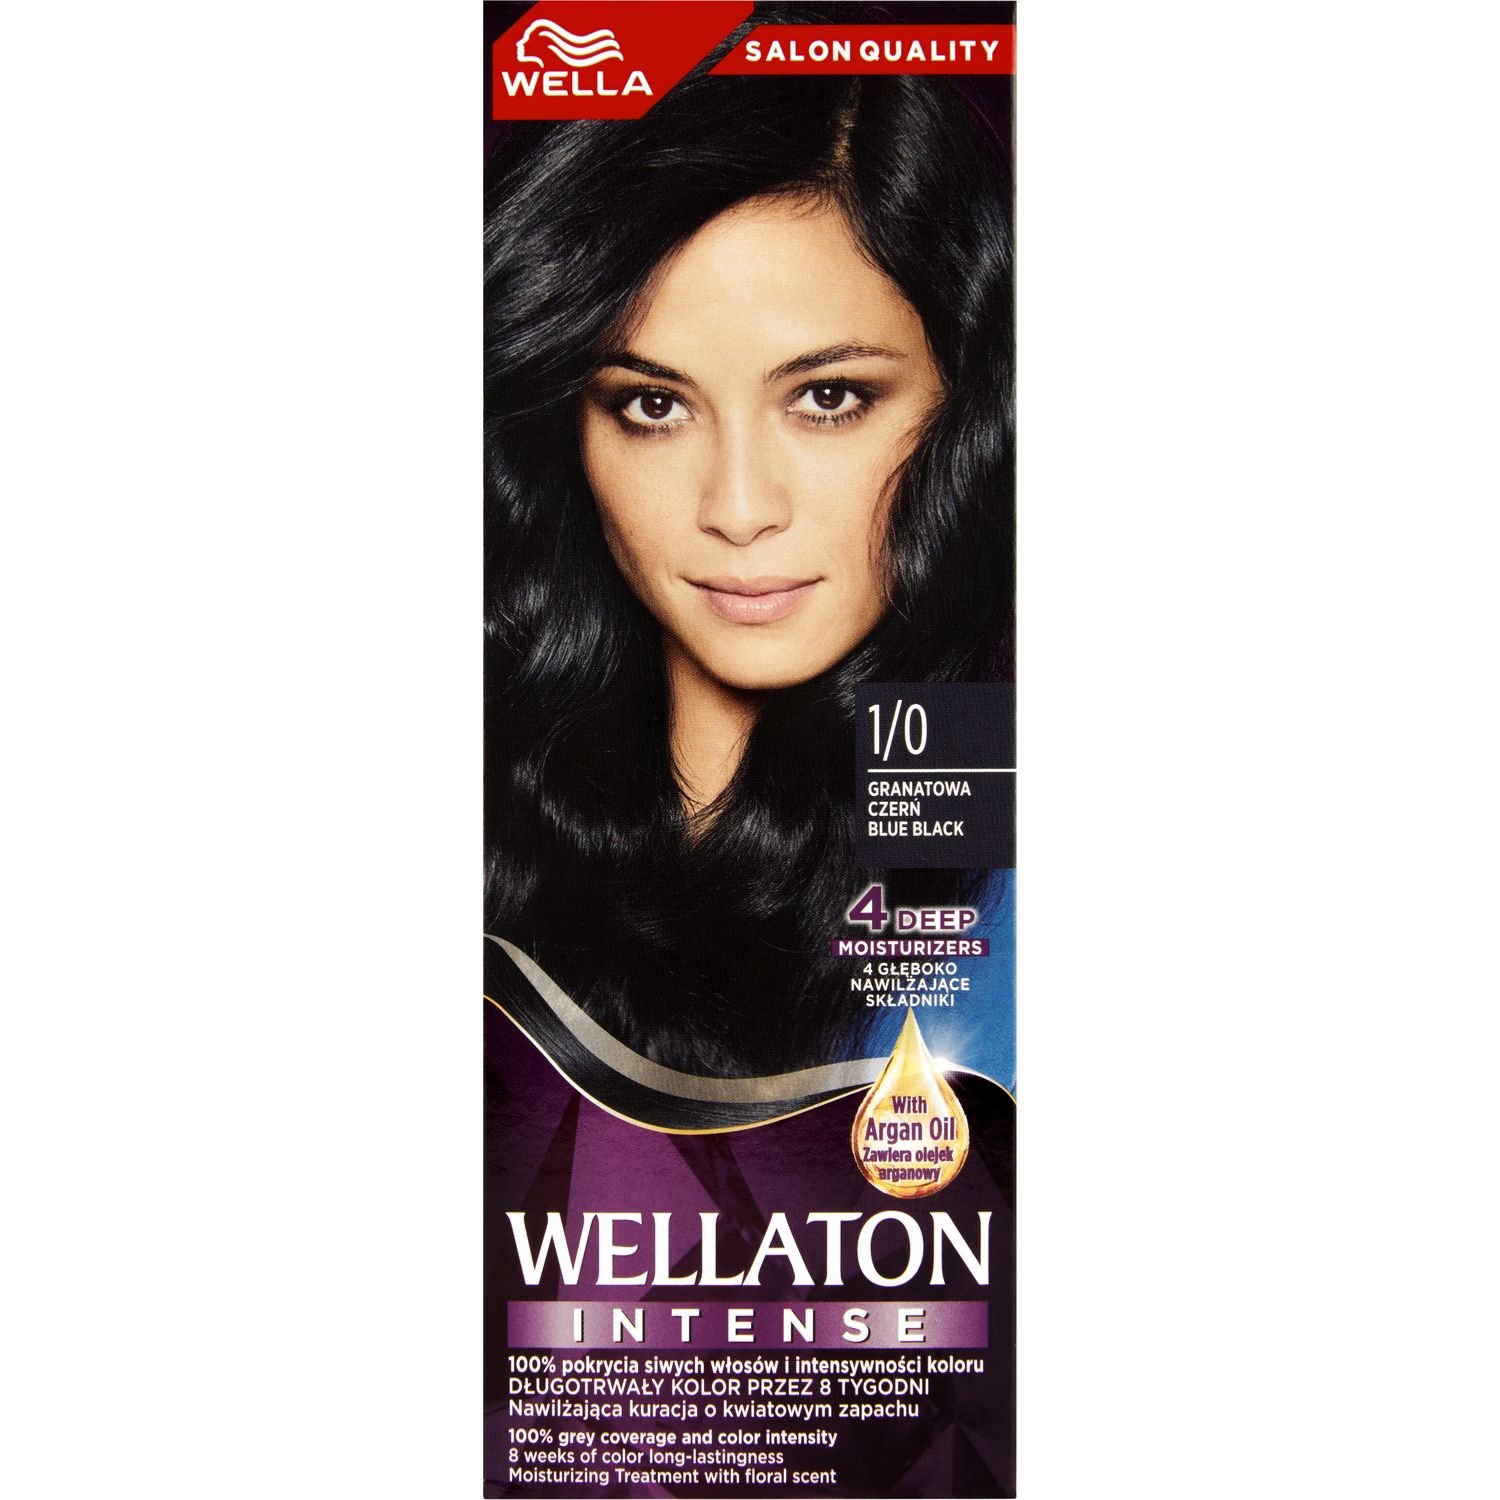 Интенсивная крем-краска для волос Wellaton, оттенок 1/0 (Сине-черний), 110 мл - фото 2